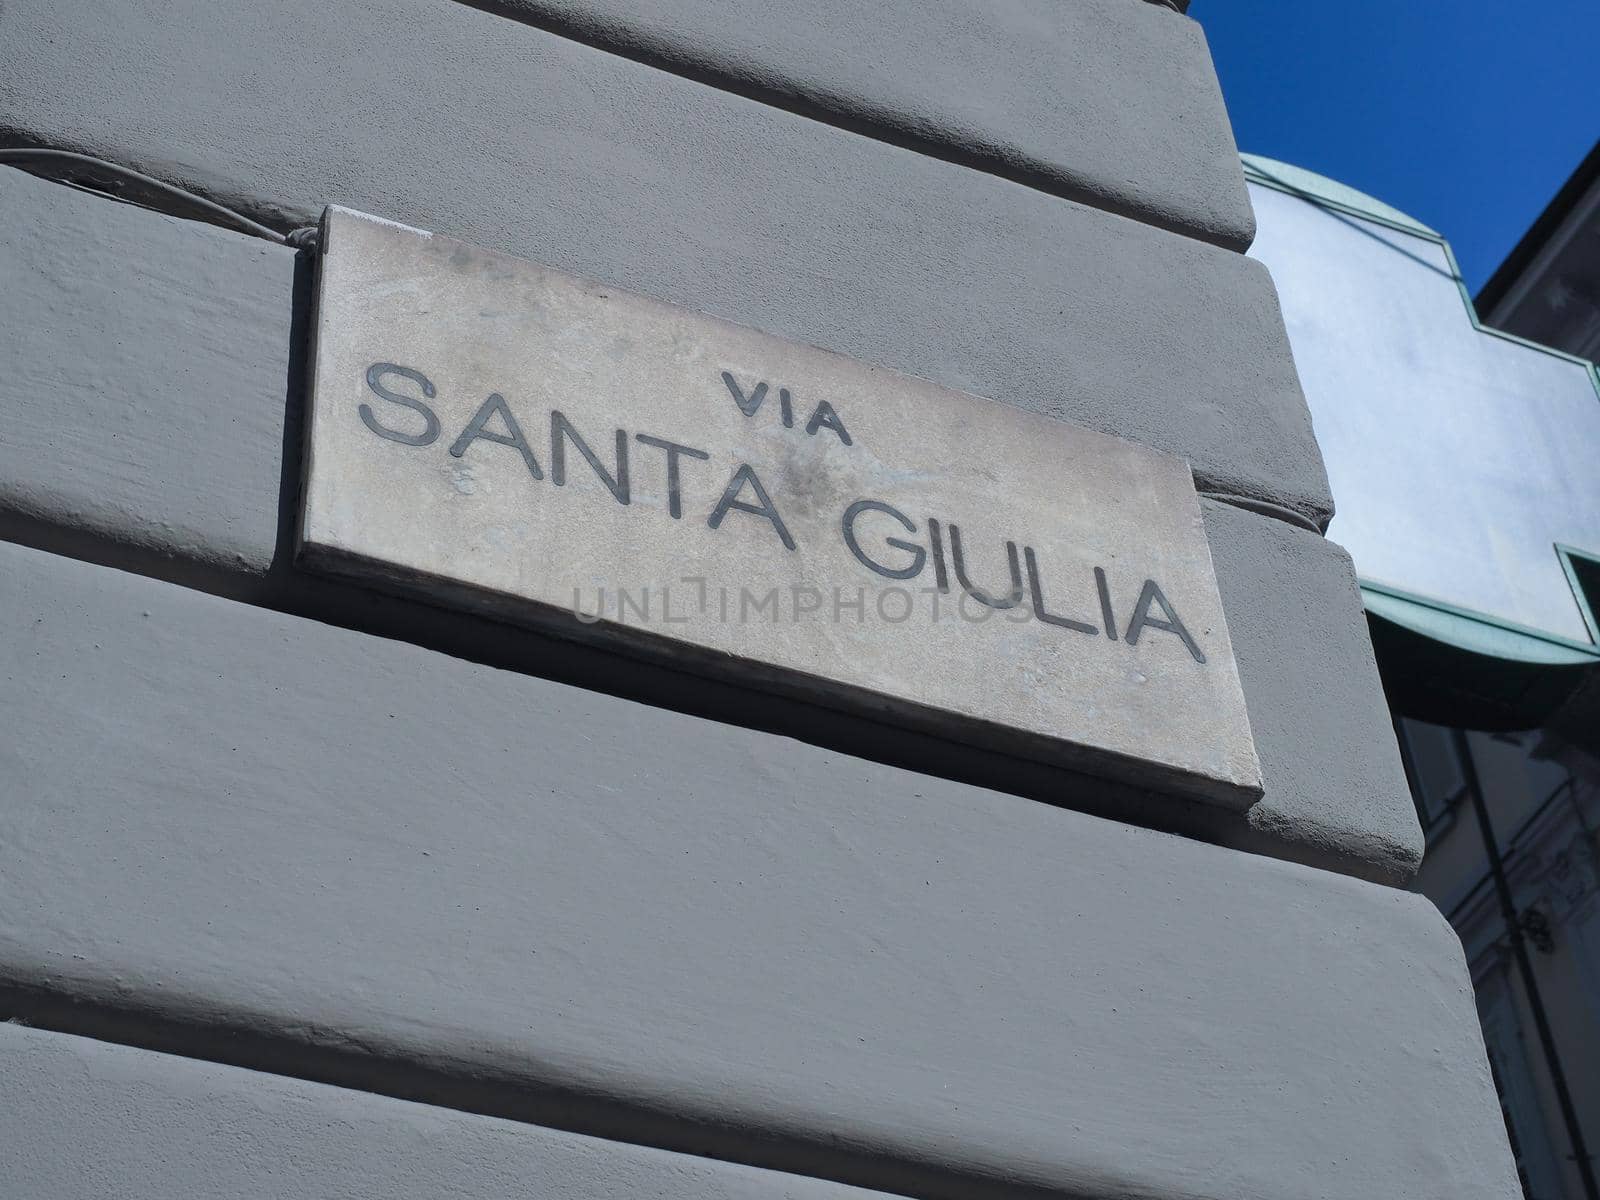 via Santa Giulia street sign in Turin